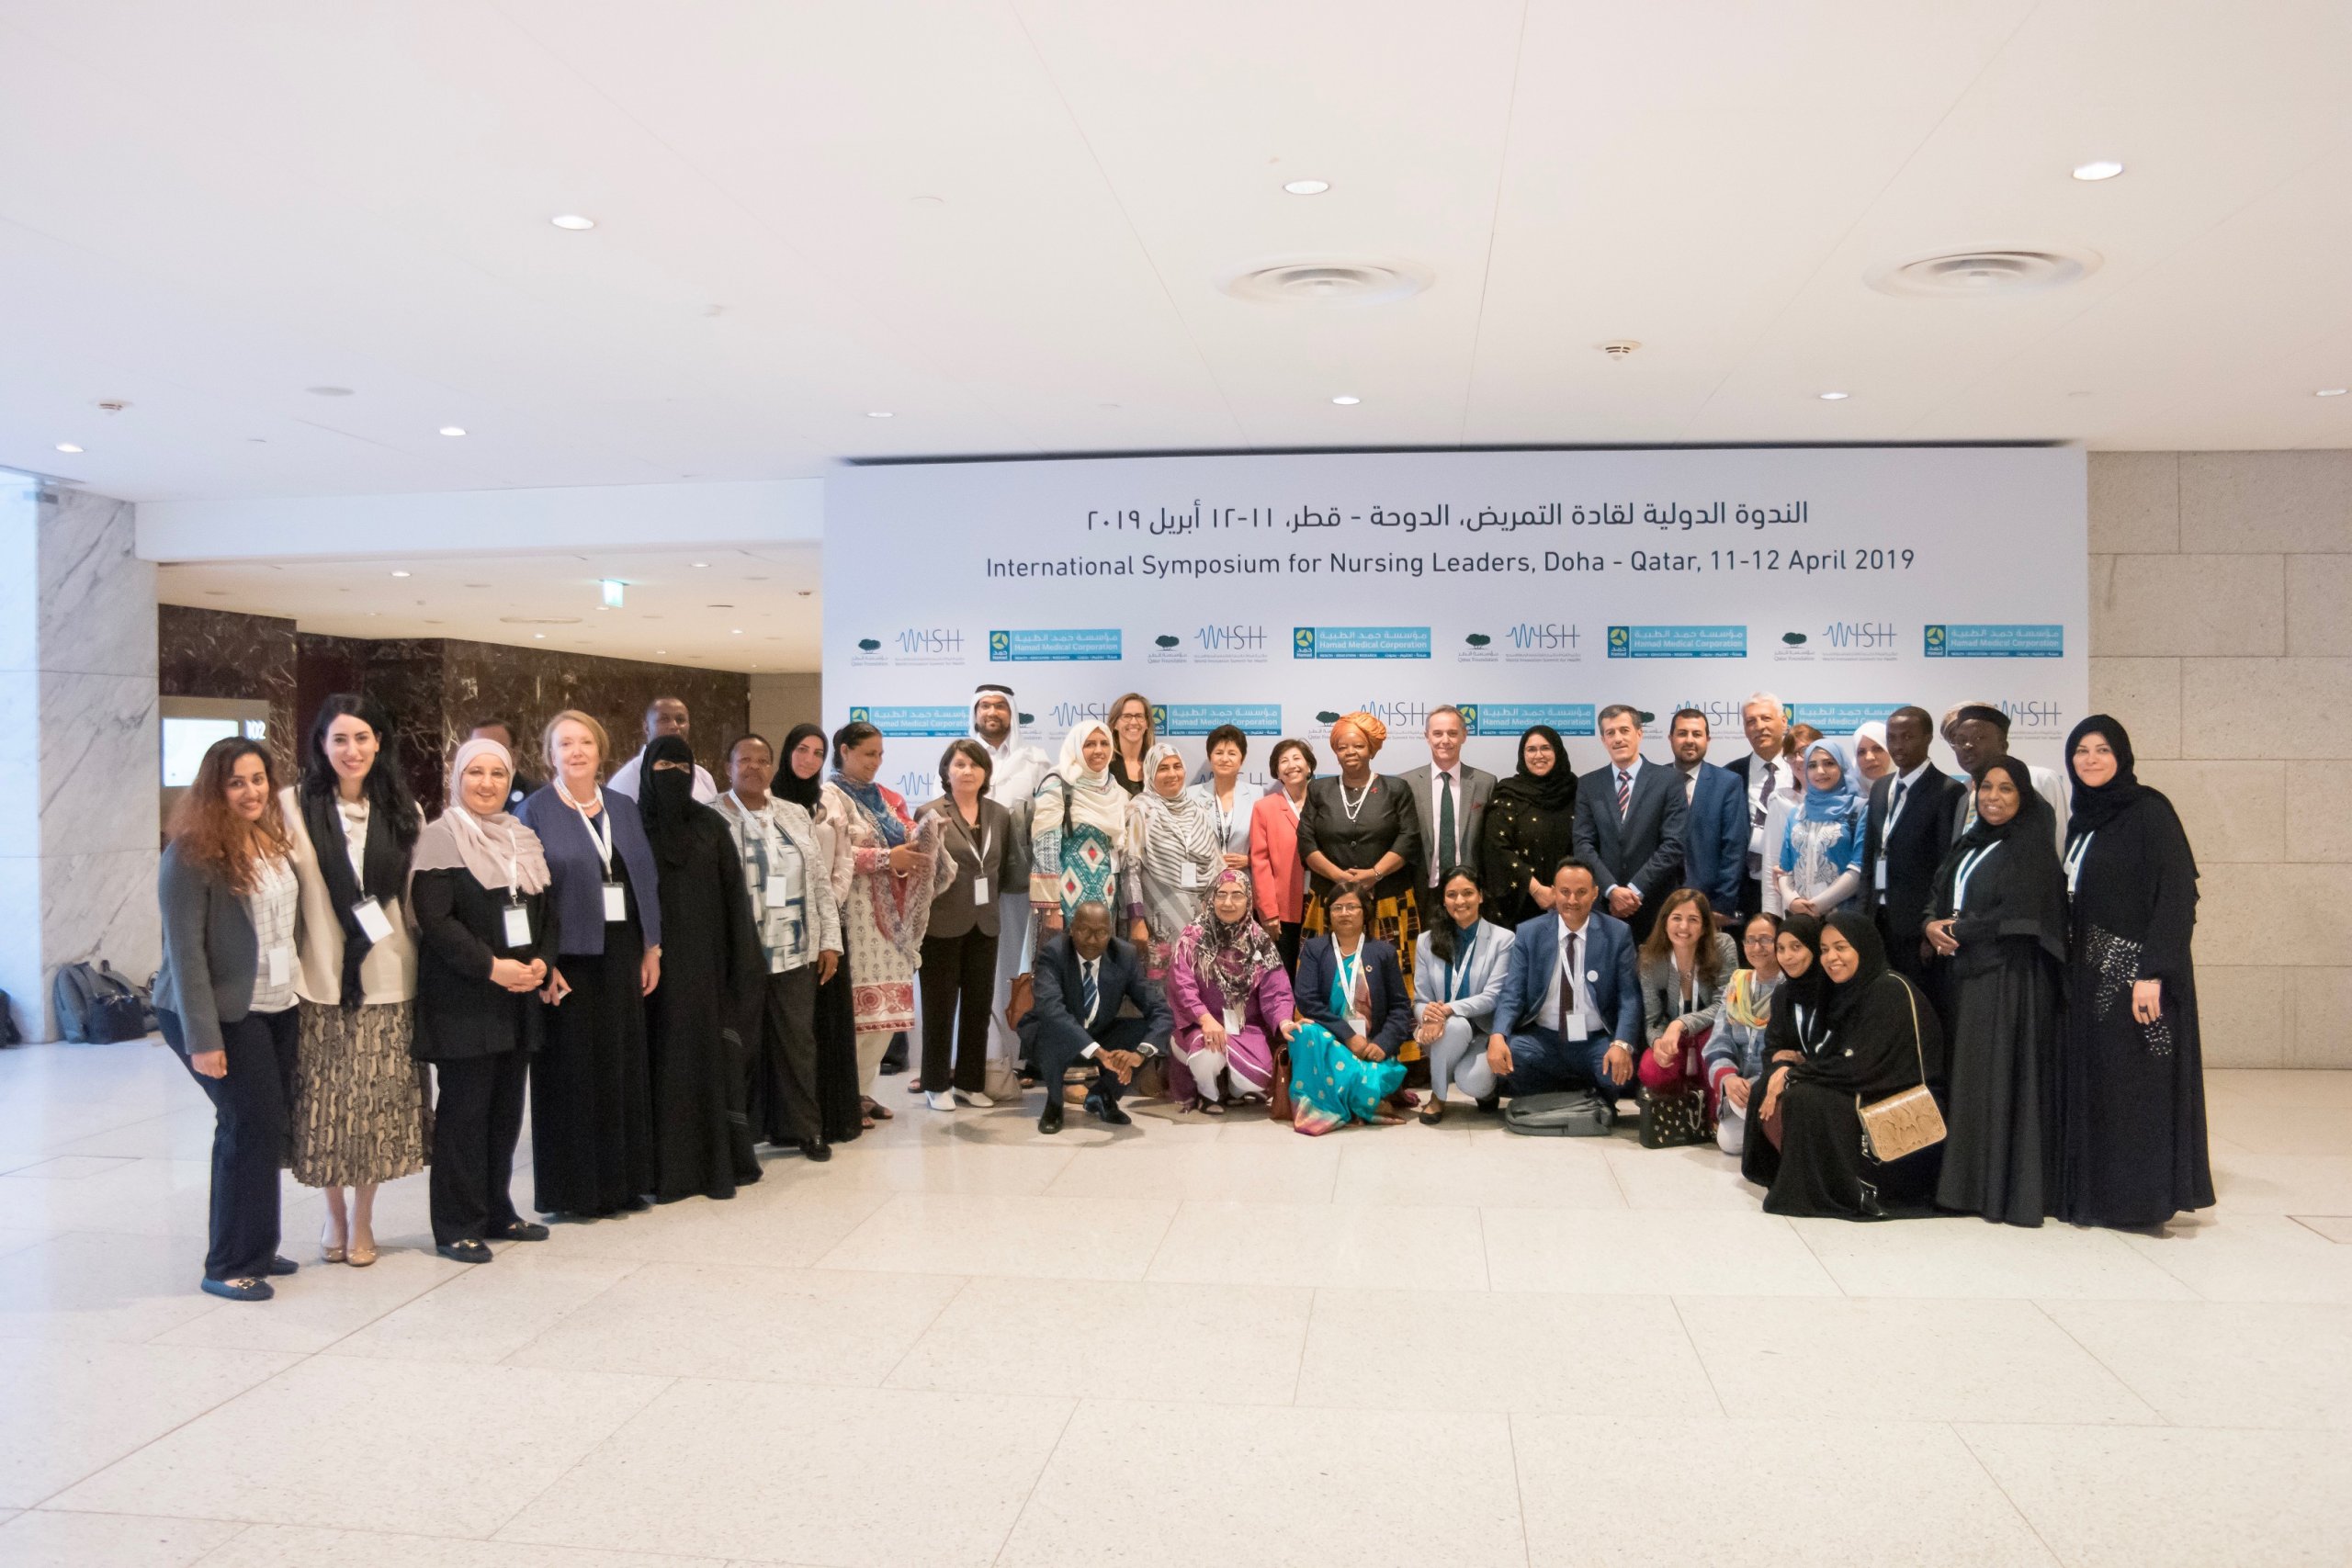 “ويش” يستضيف الندوة الدولية لتمكين قادة التمريض في آسيا وأفريقيا والشرق الأوسط